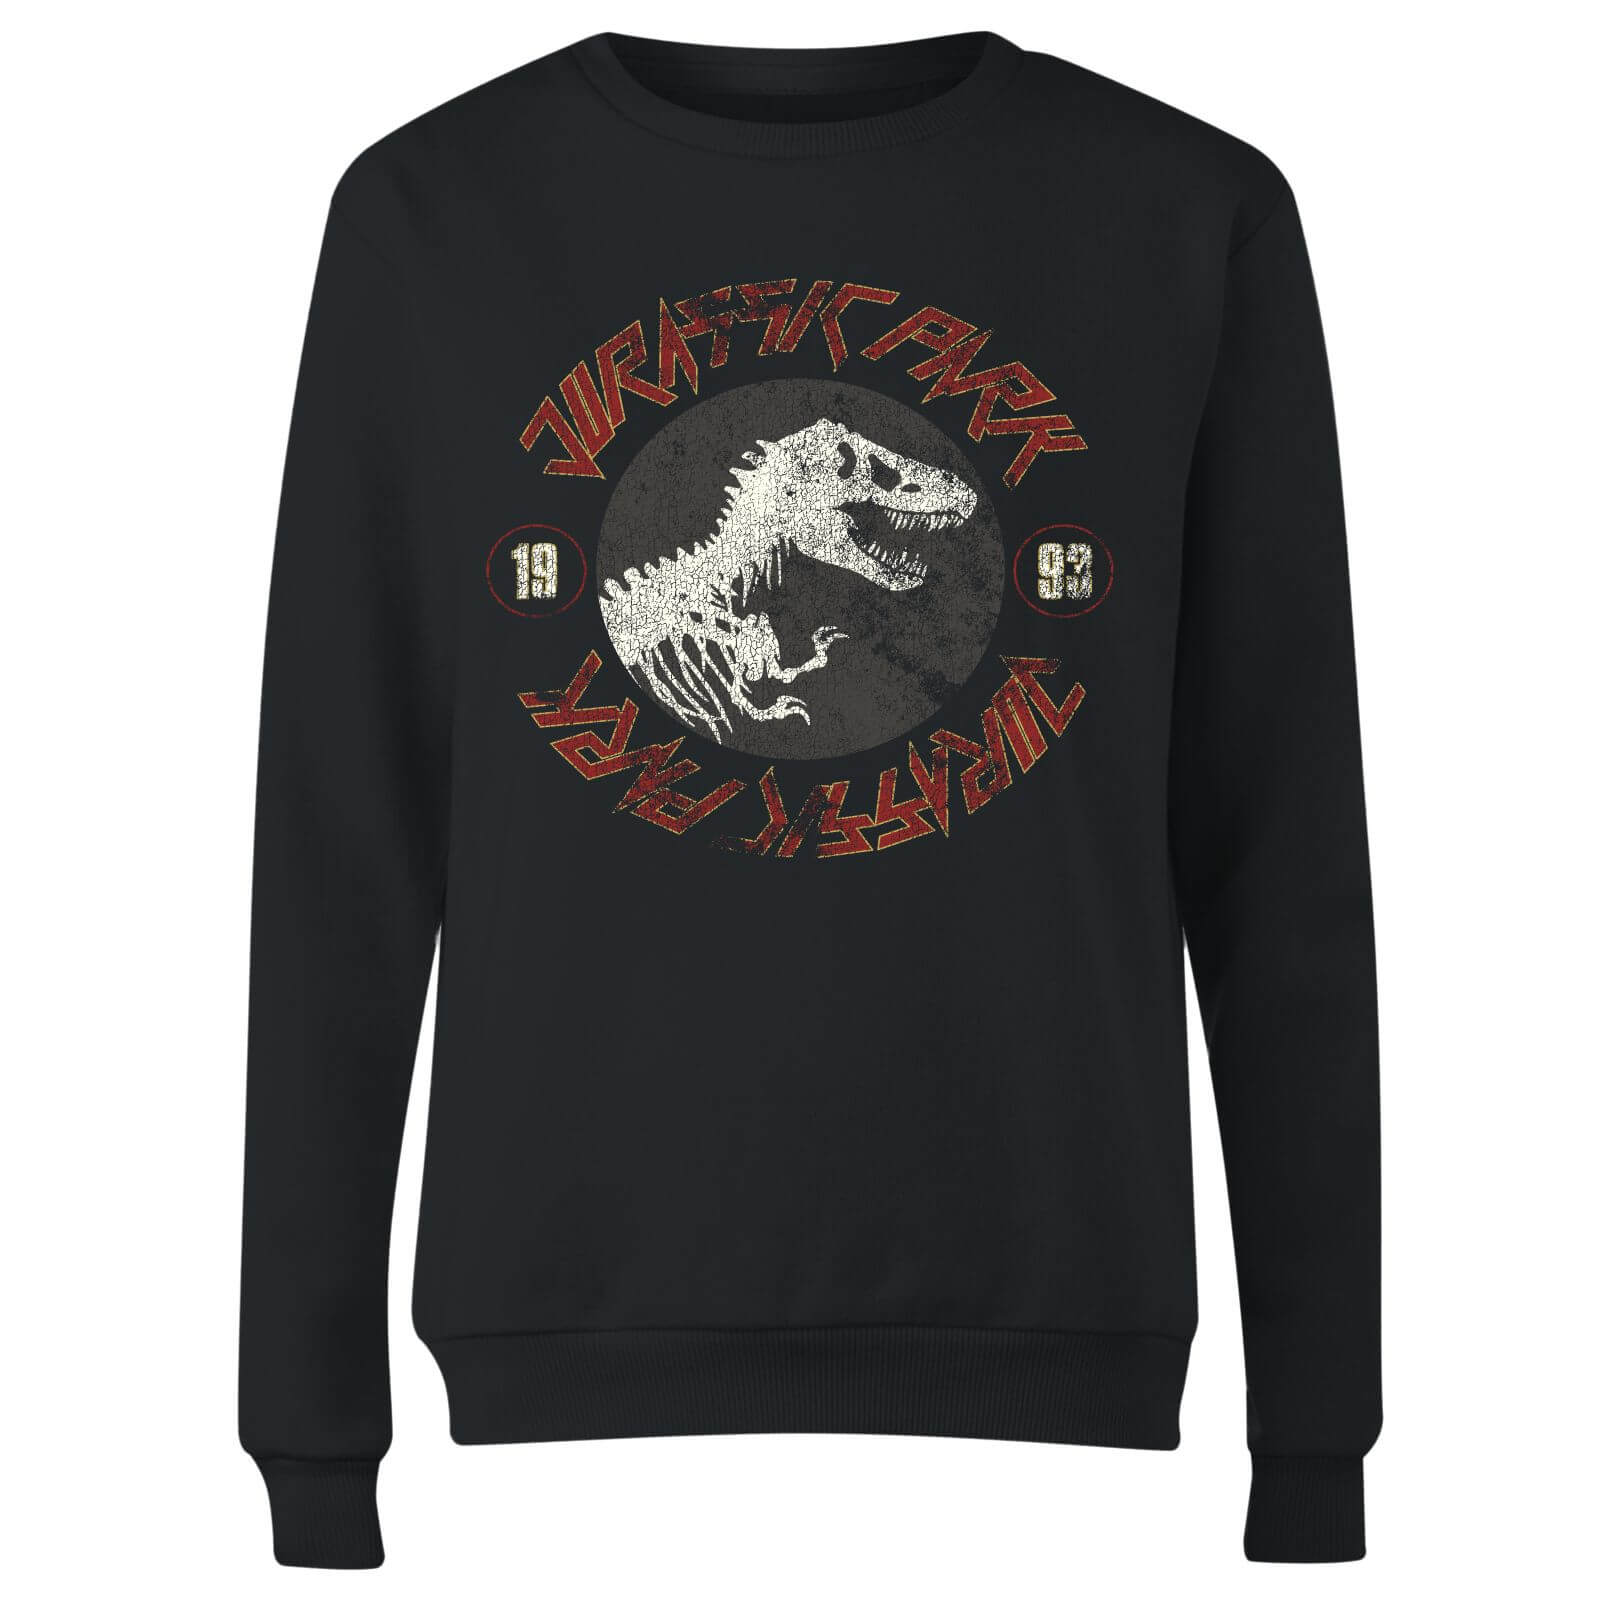 Jurassic Park Classic Twist Women's Sweatshirt - Black - S